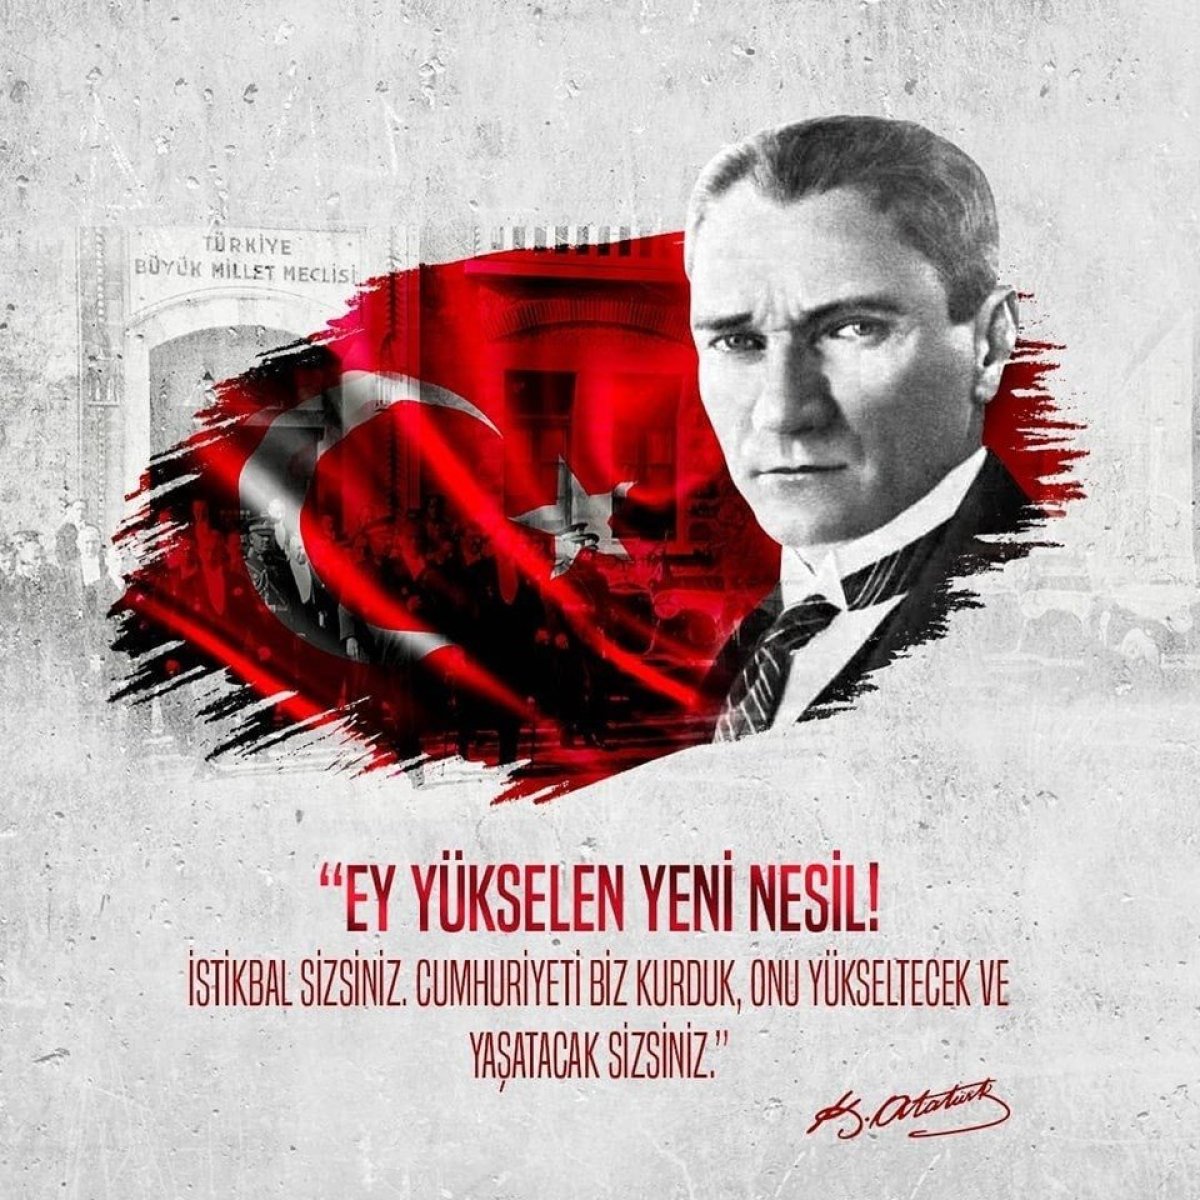 29 Ekim Cumhuriyet Bayramı için resimli mesajlar ve Atatürk'ün sözleri!  #Bir